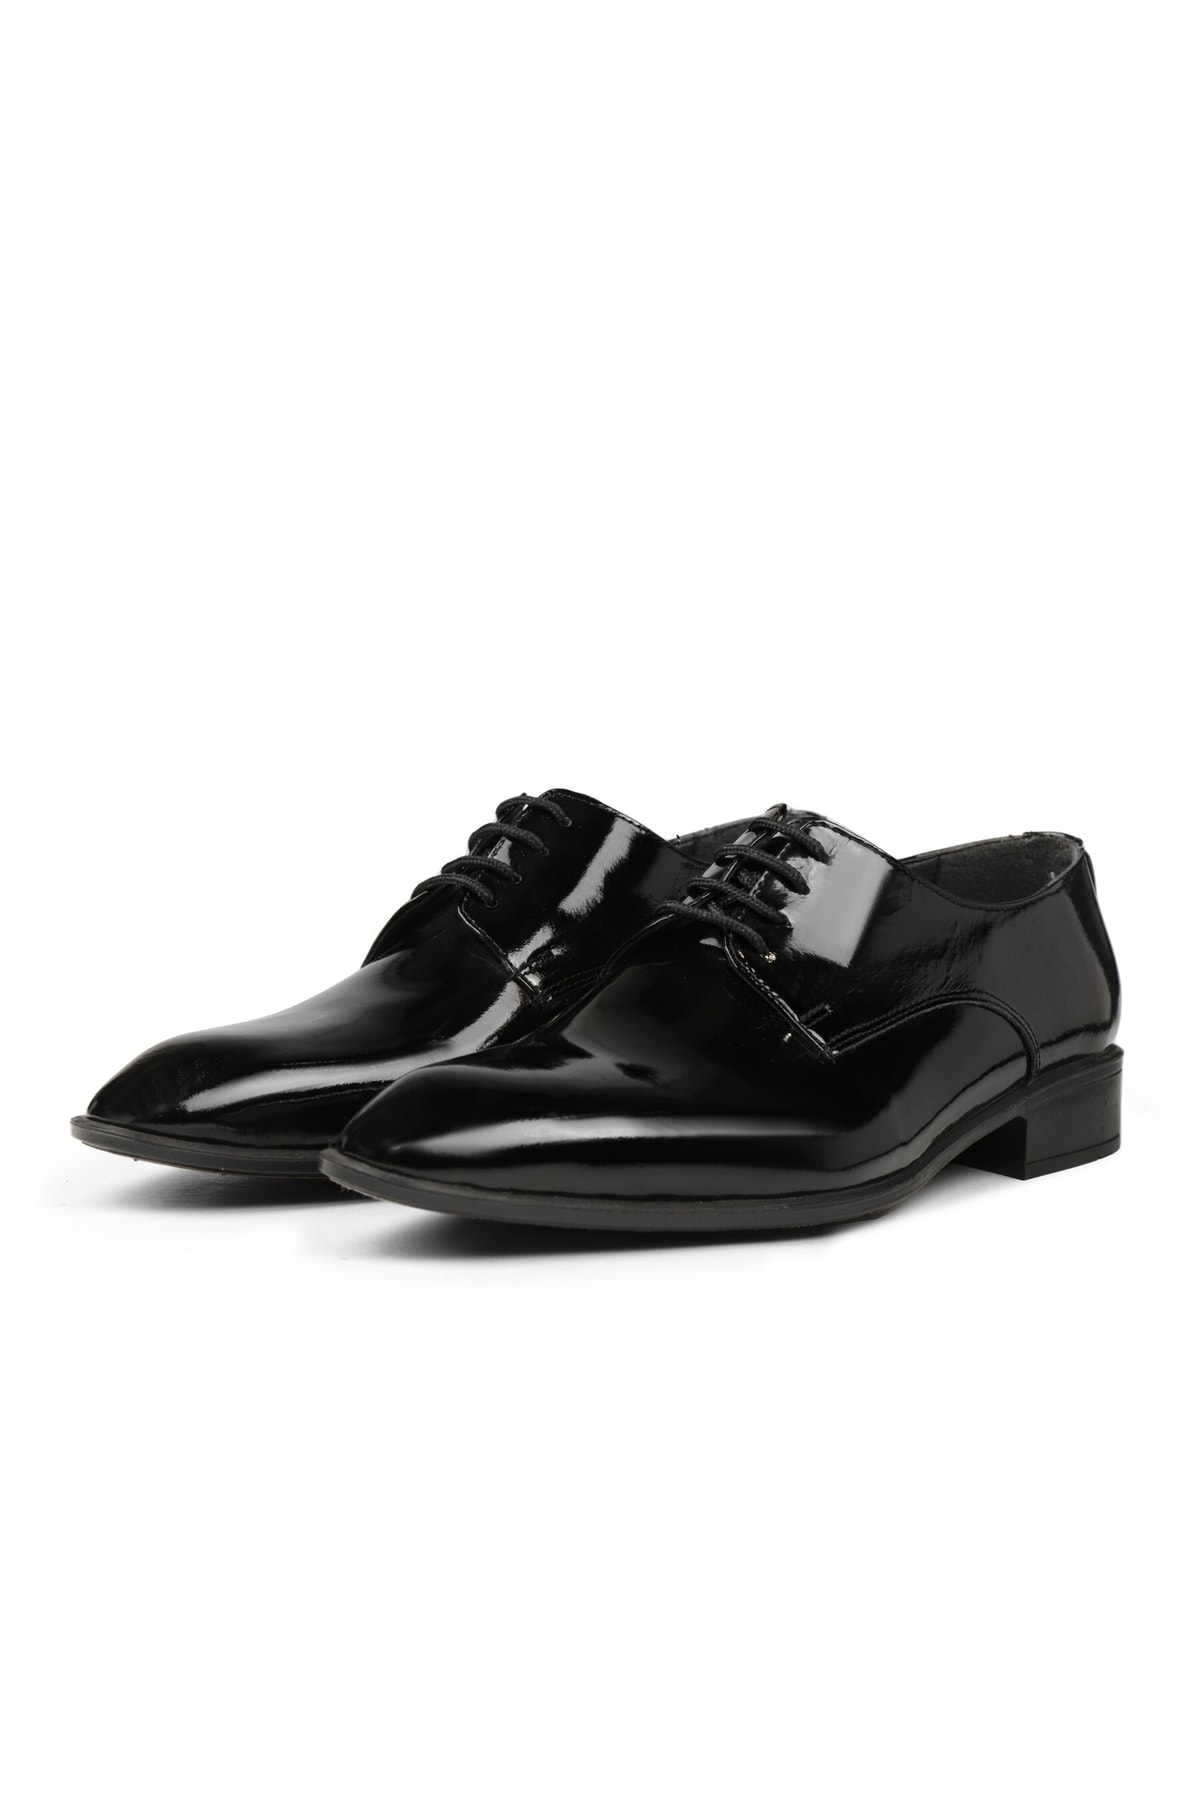 Levně Ducavelli Suit Genuine Leather Men's Classic Shoes